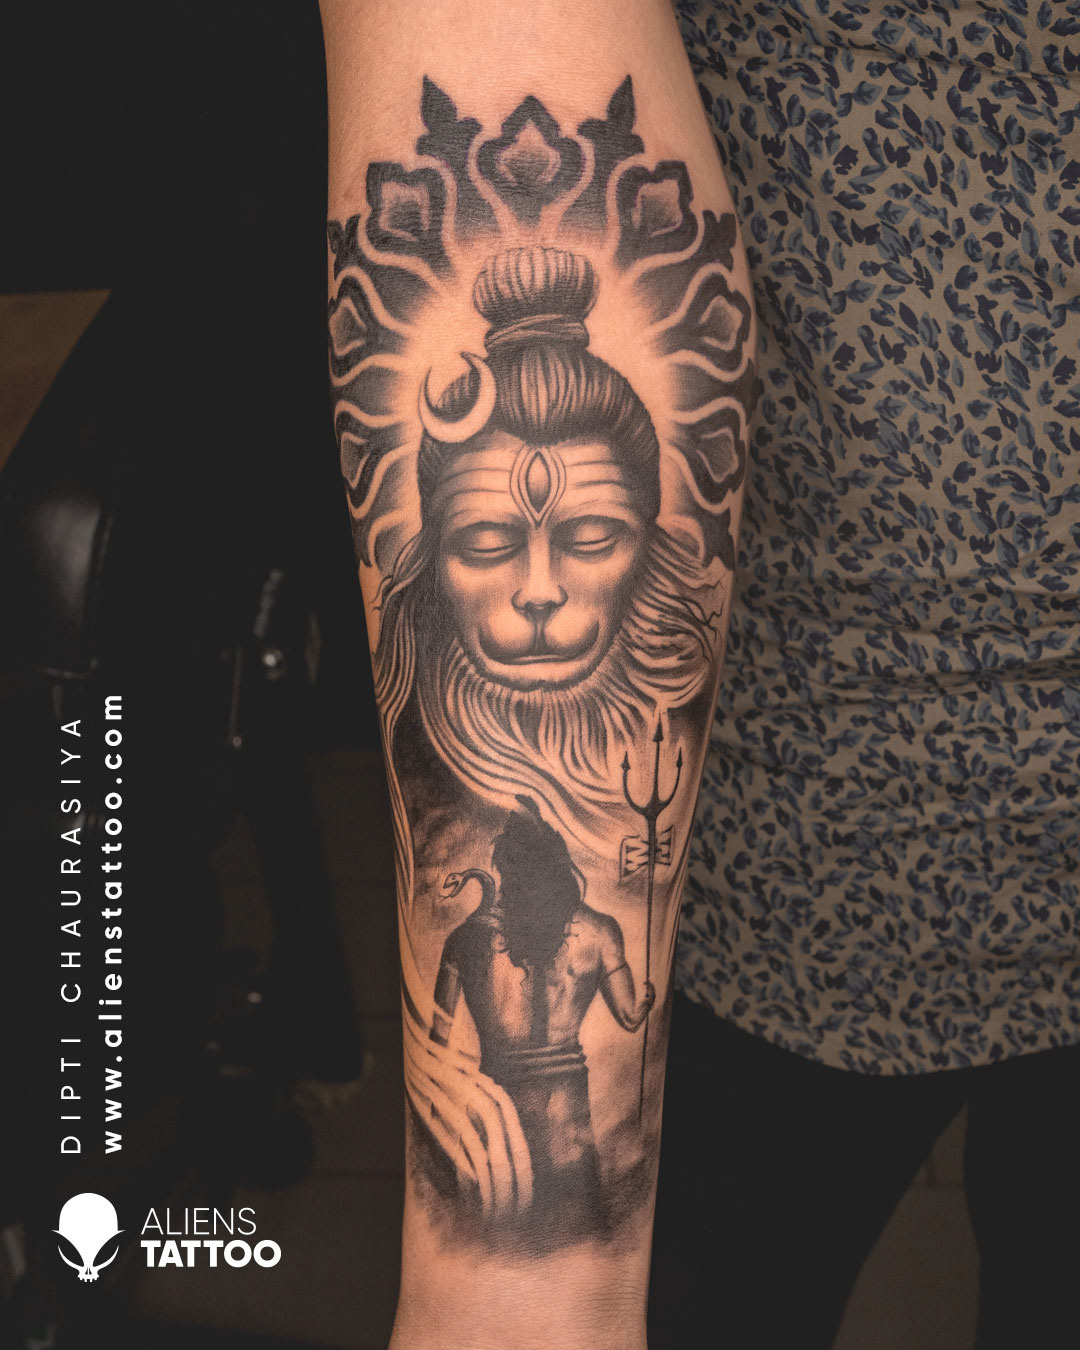 Tattoo uploaded by Vipul Chaudhary • hanuman ji tattoo |Hanuman tattoo  |Bajrangbali tattoo |Hanuman ji nu tattoo • Tattoodo